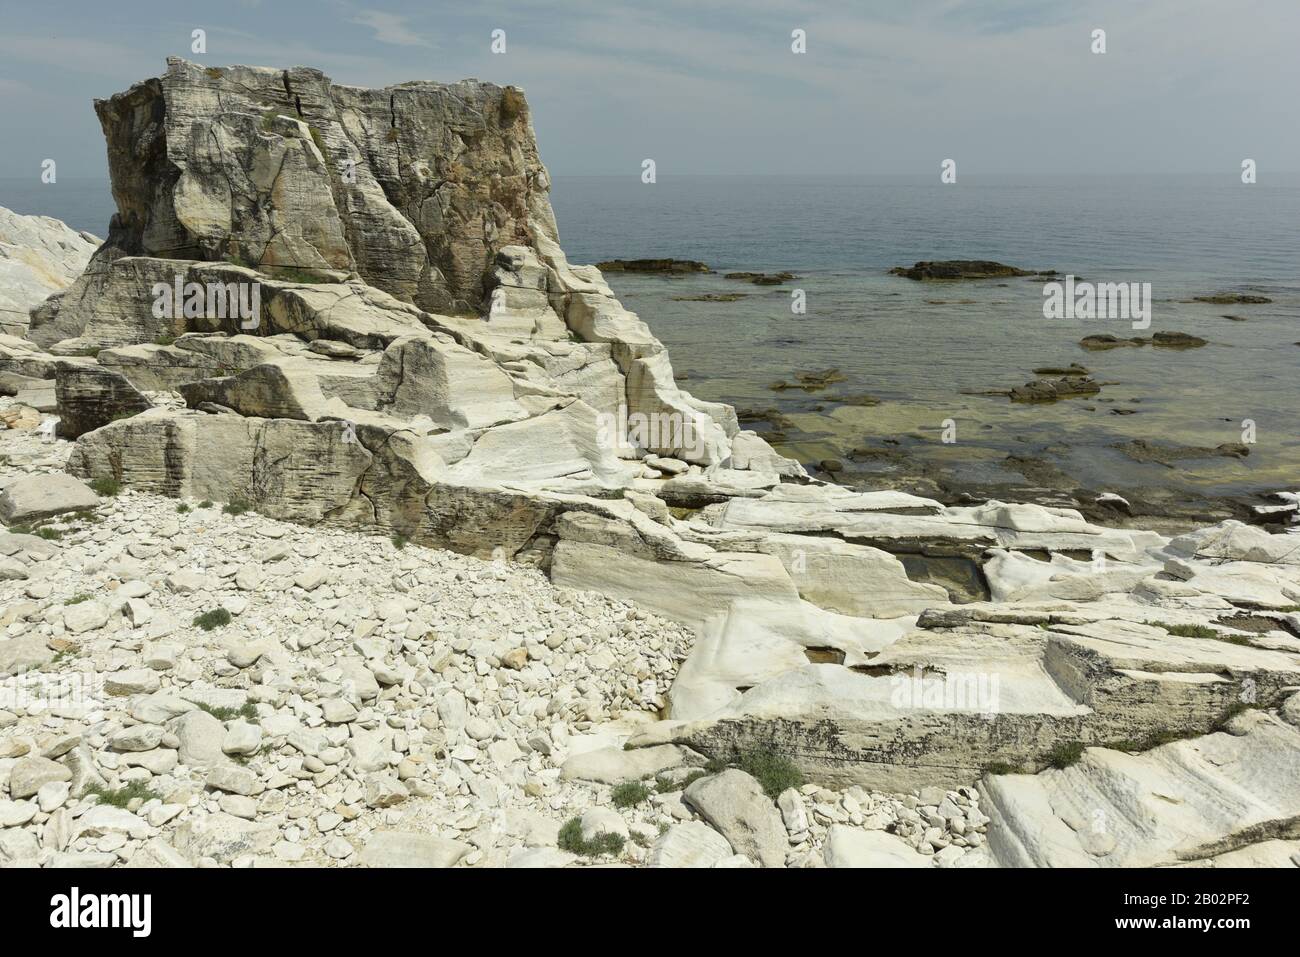 Alyki antica cava di marmo, Thassos, Grecia Foto Stock